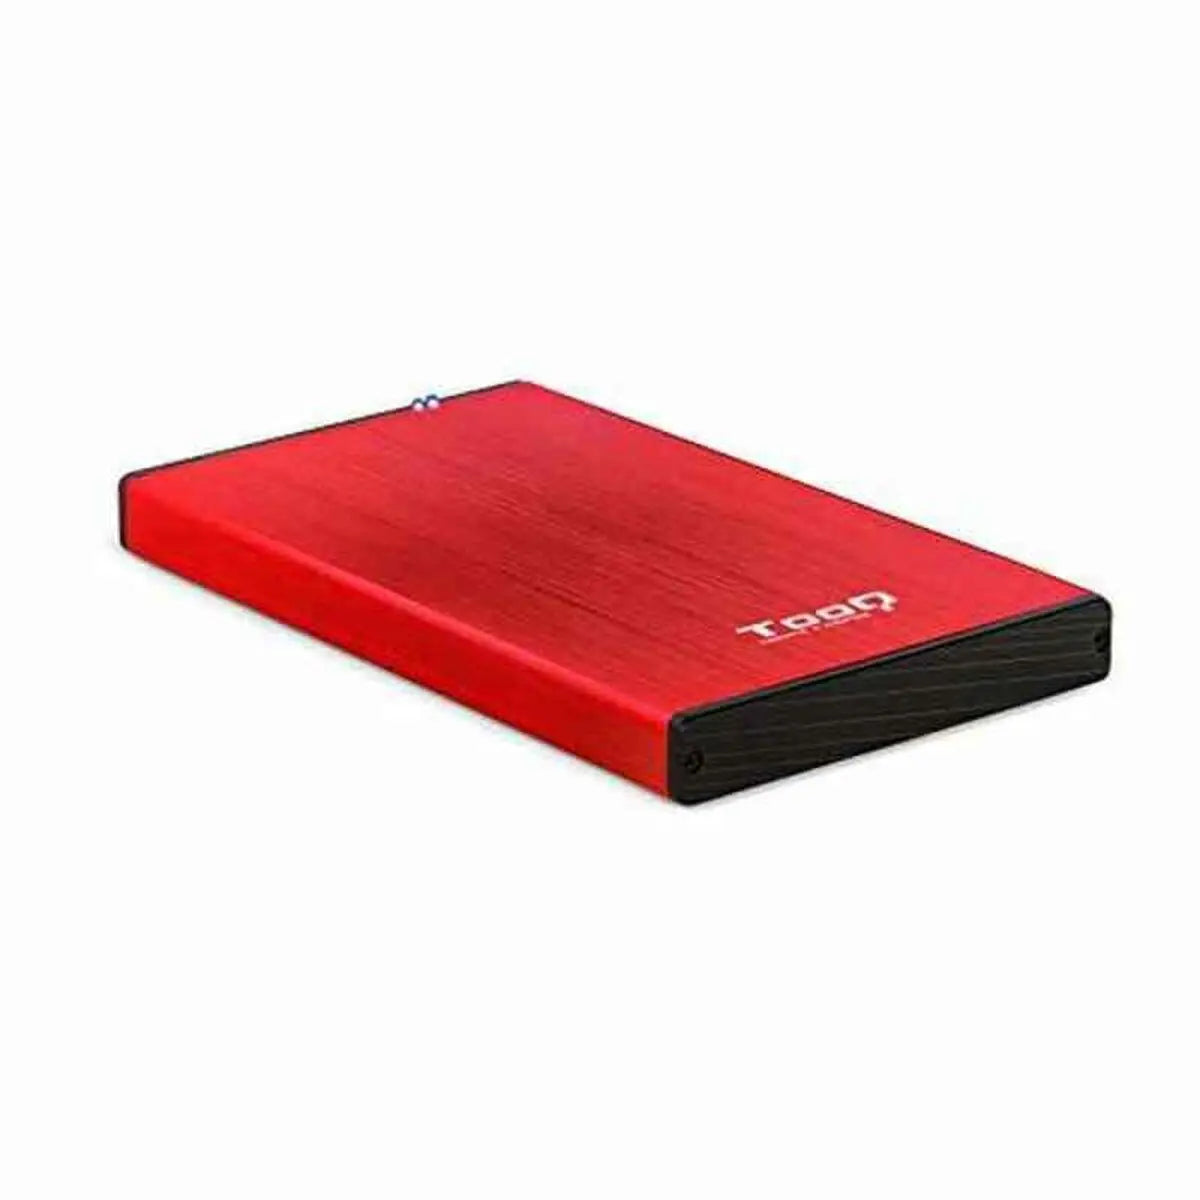 Hard drive case TooQ TQE-2527 SATA III USB 3.0 2,5" 3,5" - IGSI Europe Ltd